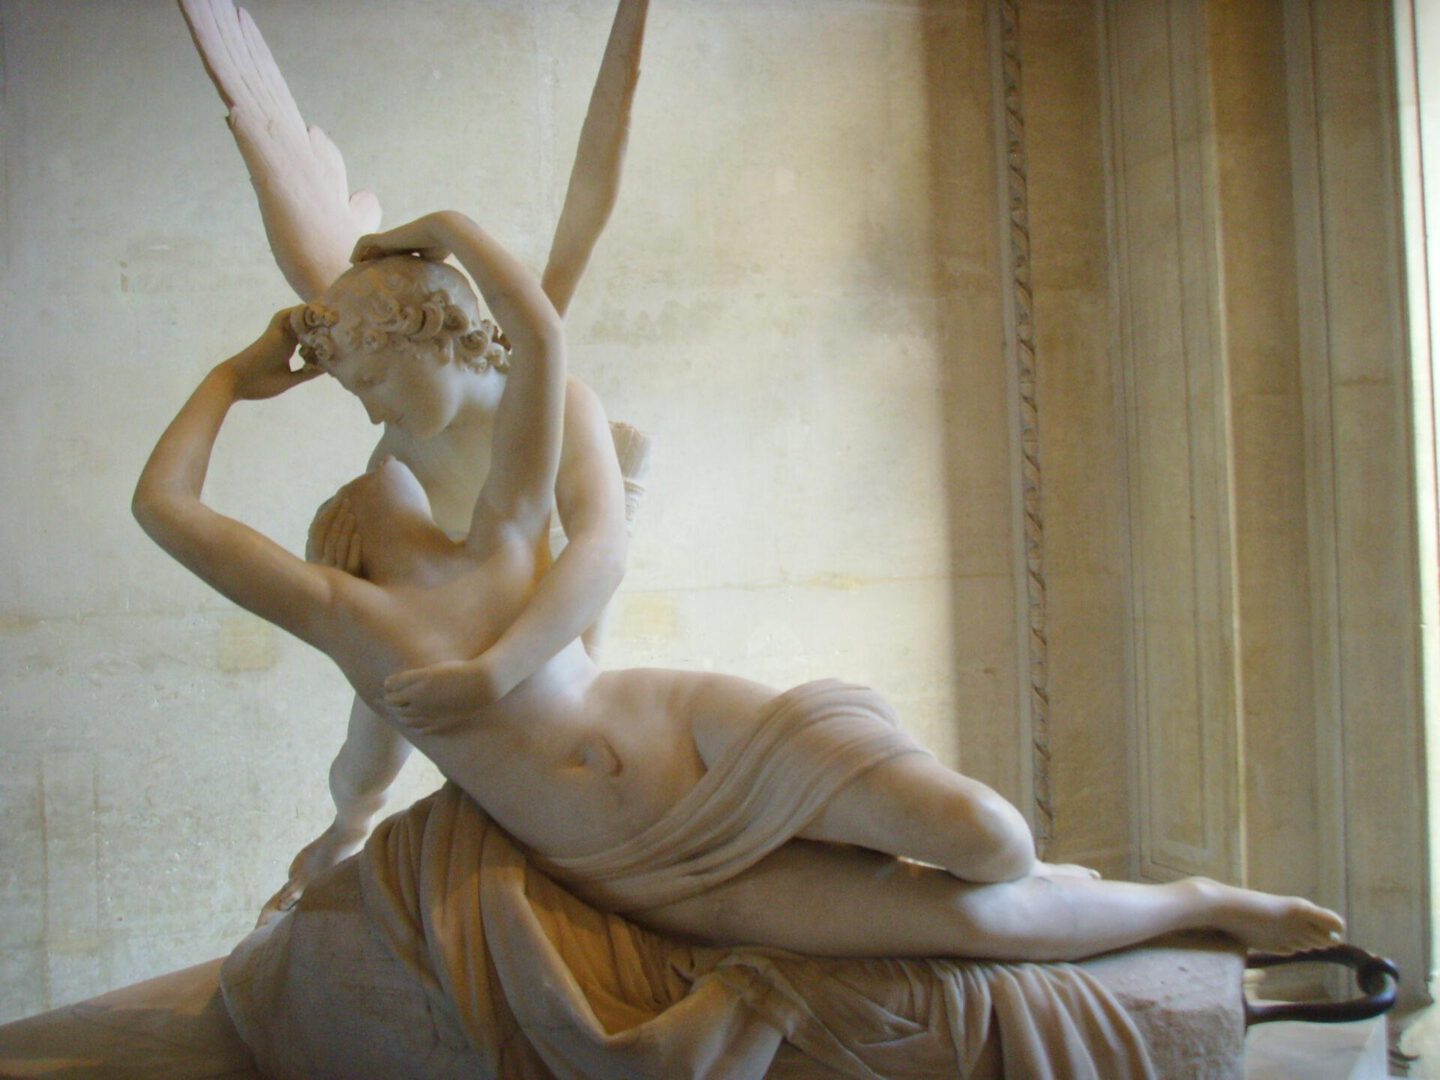 When in Paris: Amor & Psyche von Antonio CANOVA at the Louvre